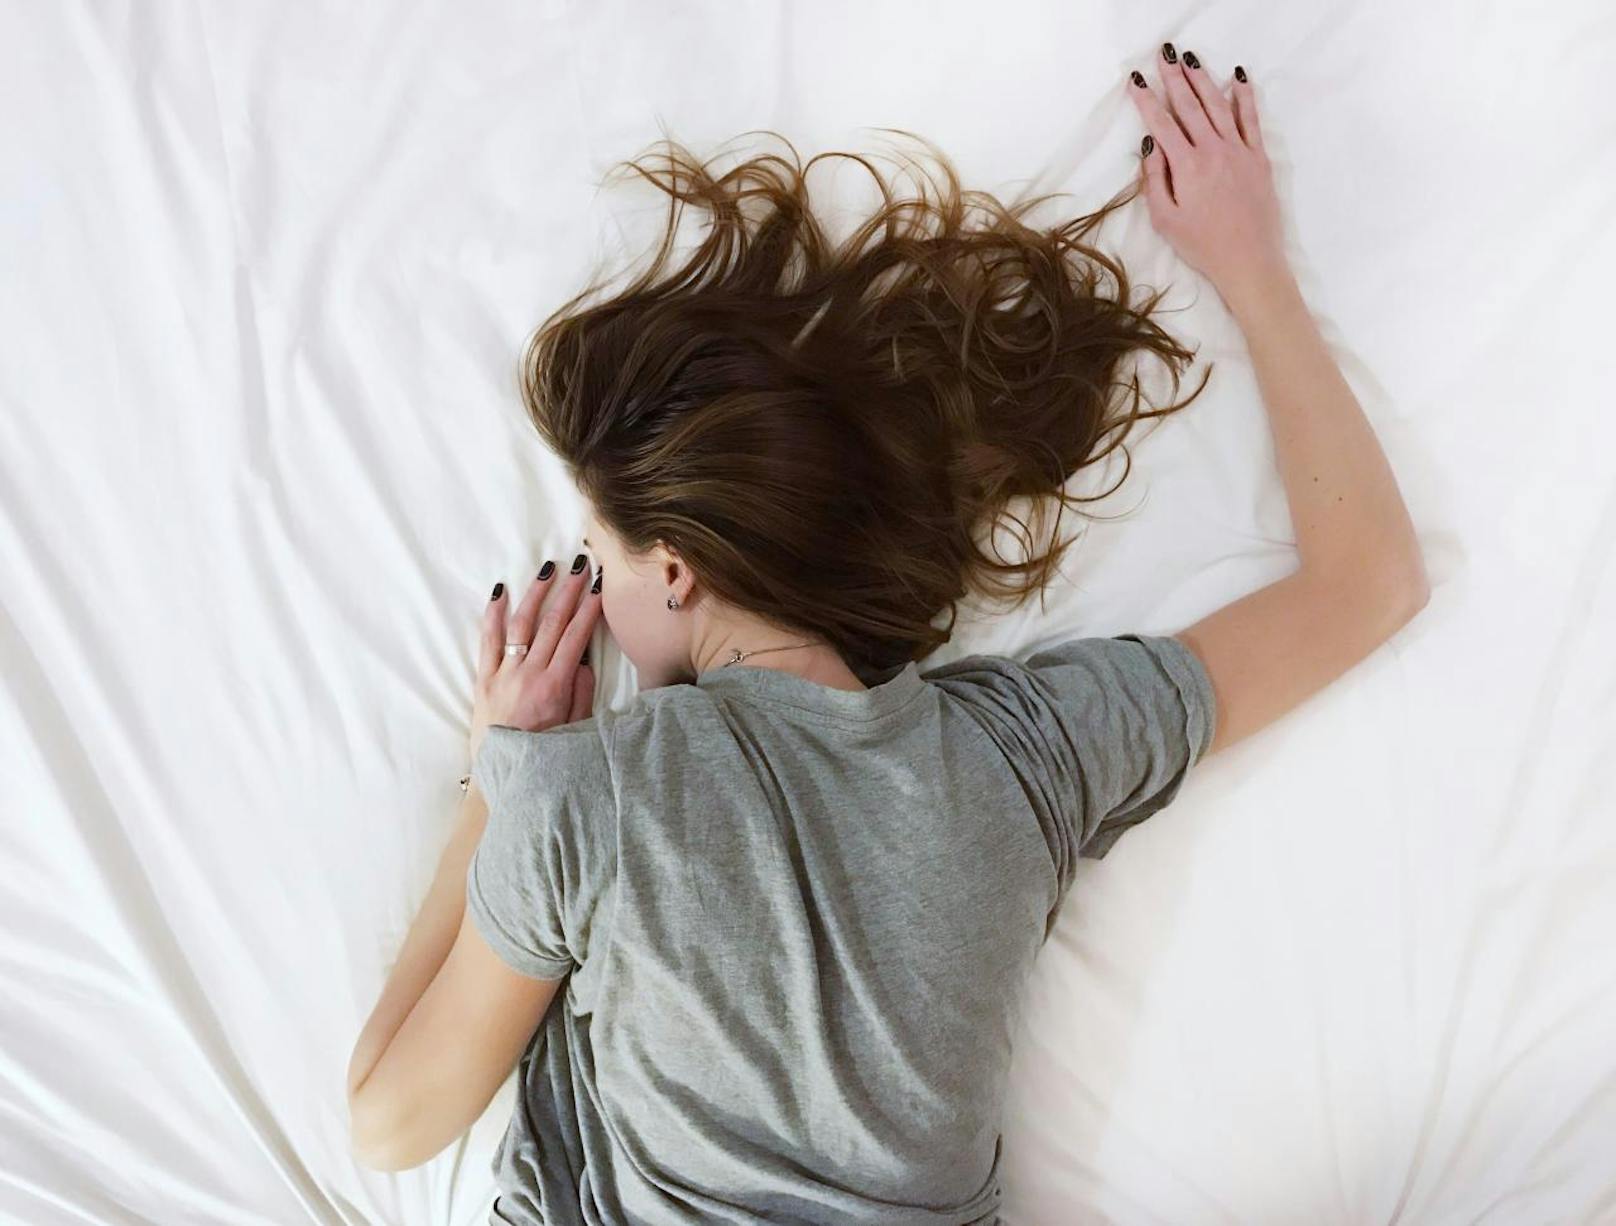 Ein Drittel der Österreicher kämpft mit "gravierenden Schlafproblemen". Die Gründe dafür sind vielfältig, wir nennen dir fünf mögliche Ursachen.